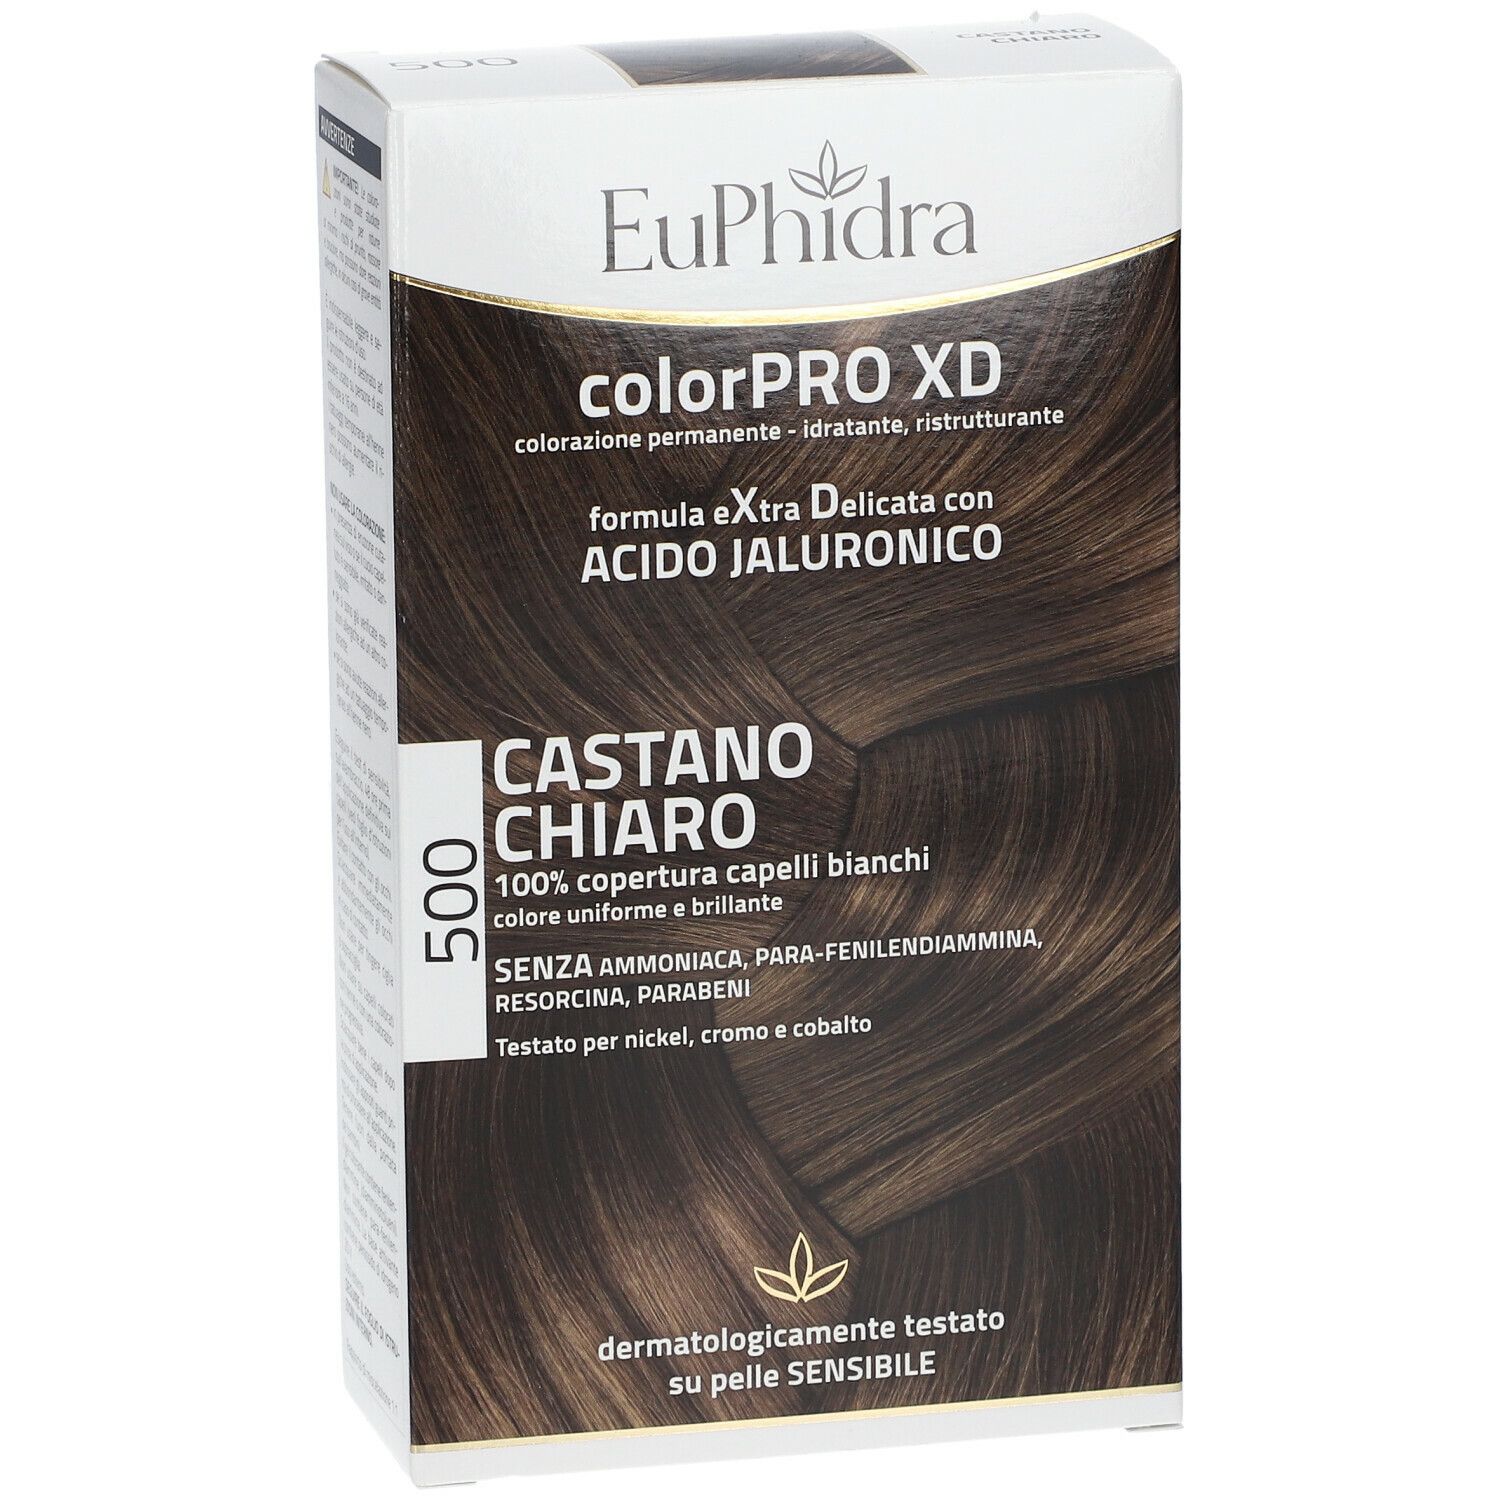 Euphidra ColorPRO XD Castano Chiaro 500